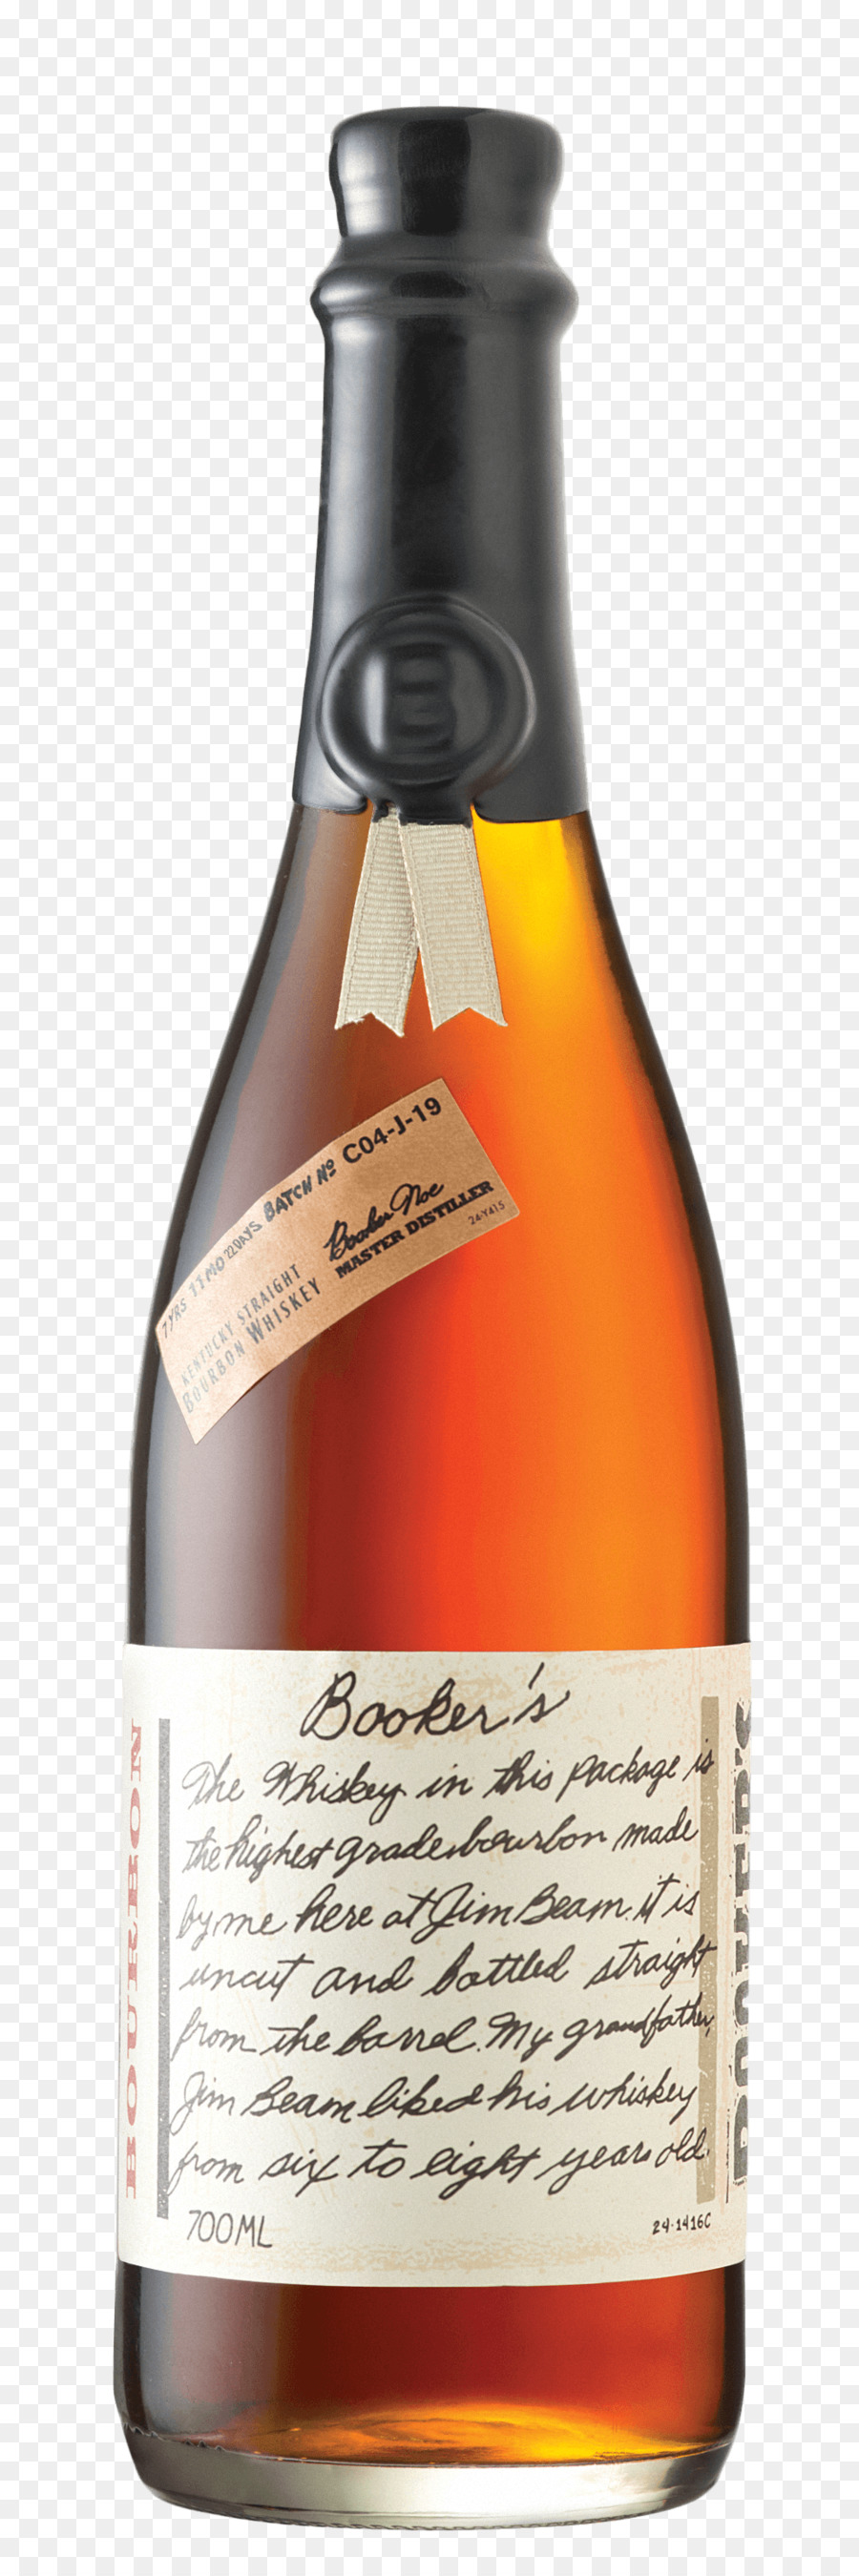 Booker del Bourbon whiskey Basilico Hayden Distillato bevanda - bere